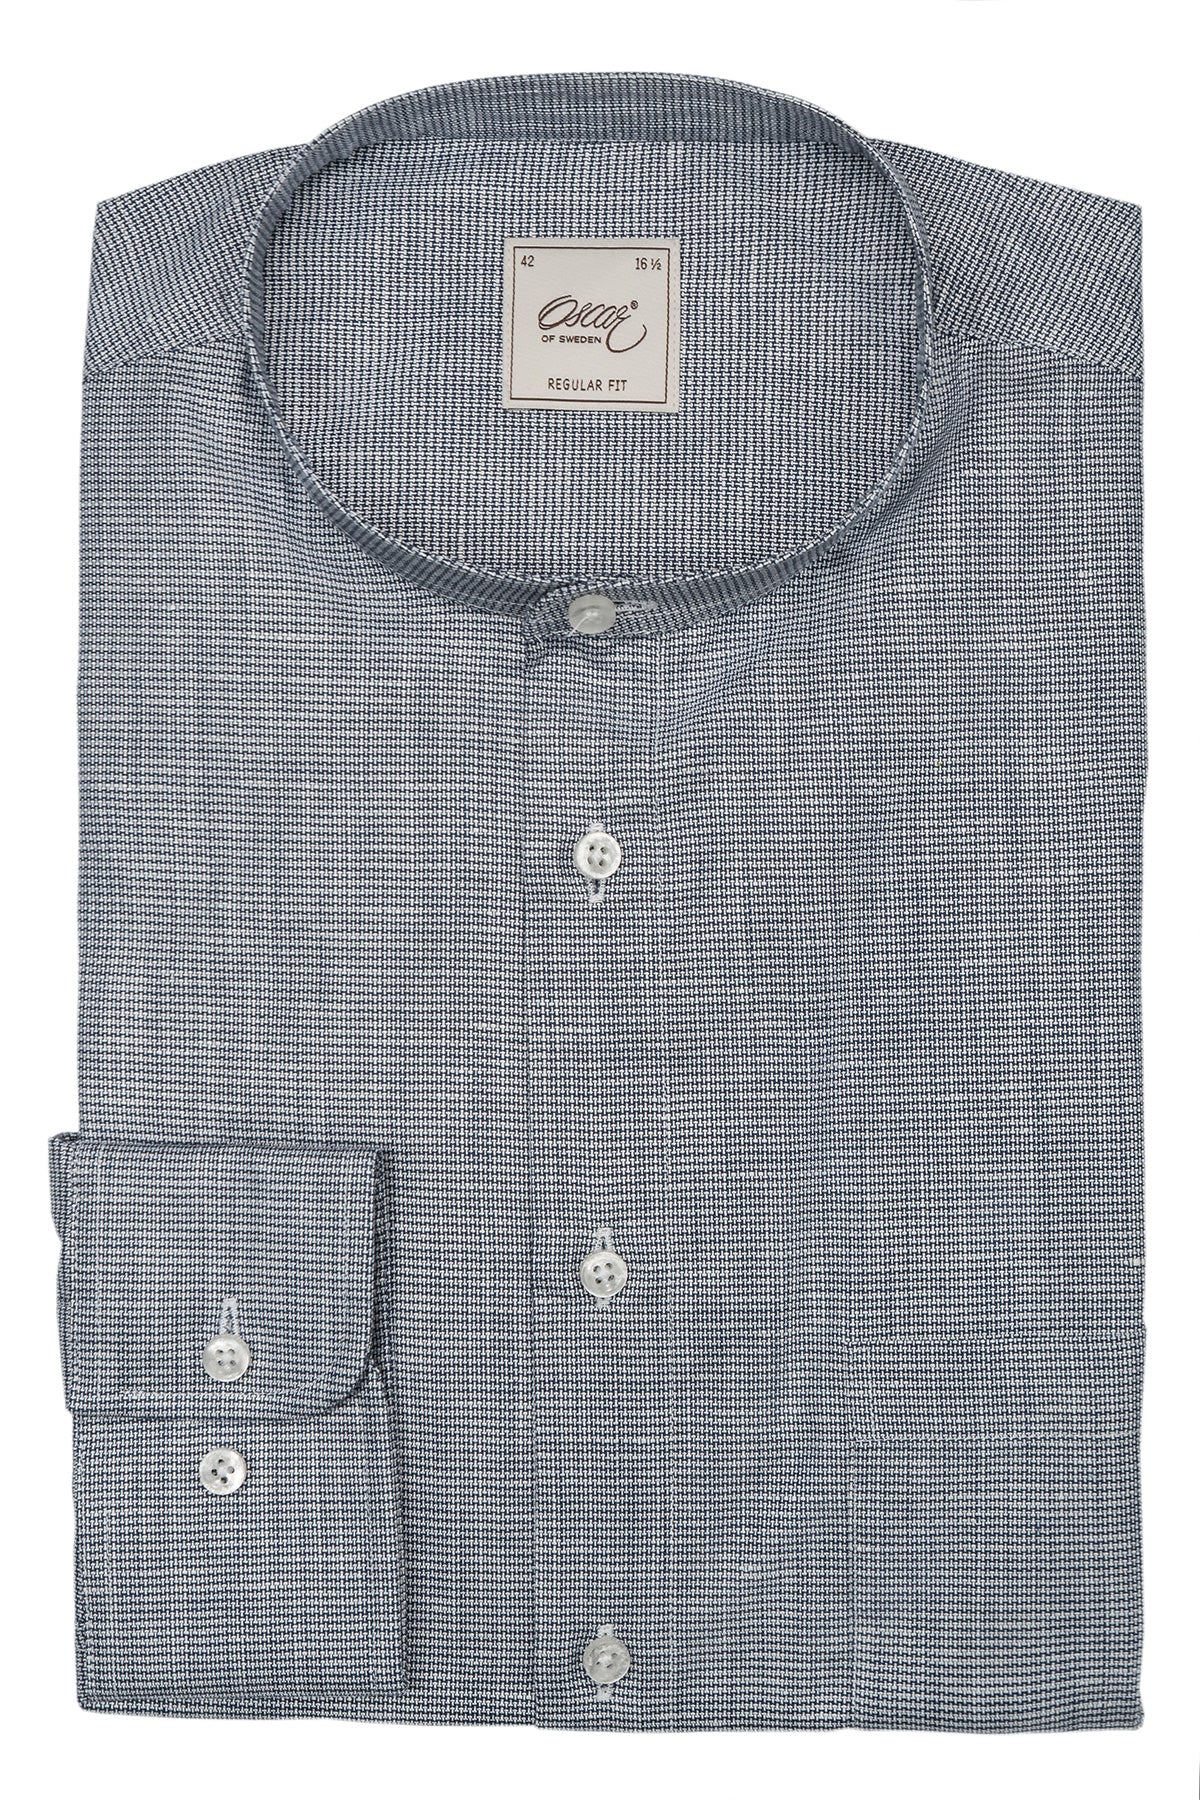 Blue cotton linen regular fit shirt